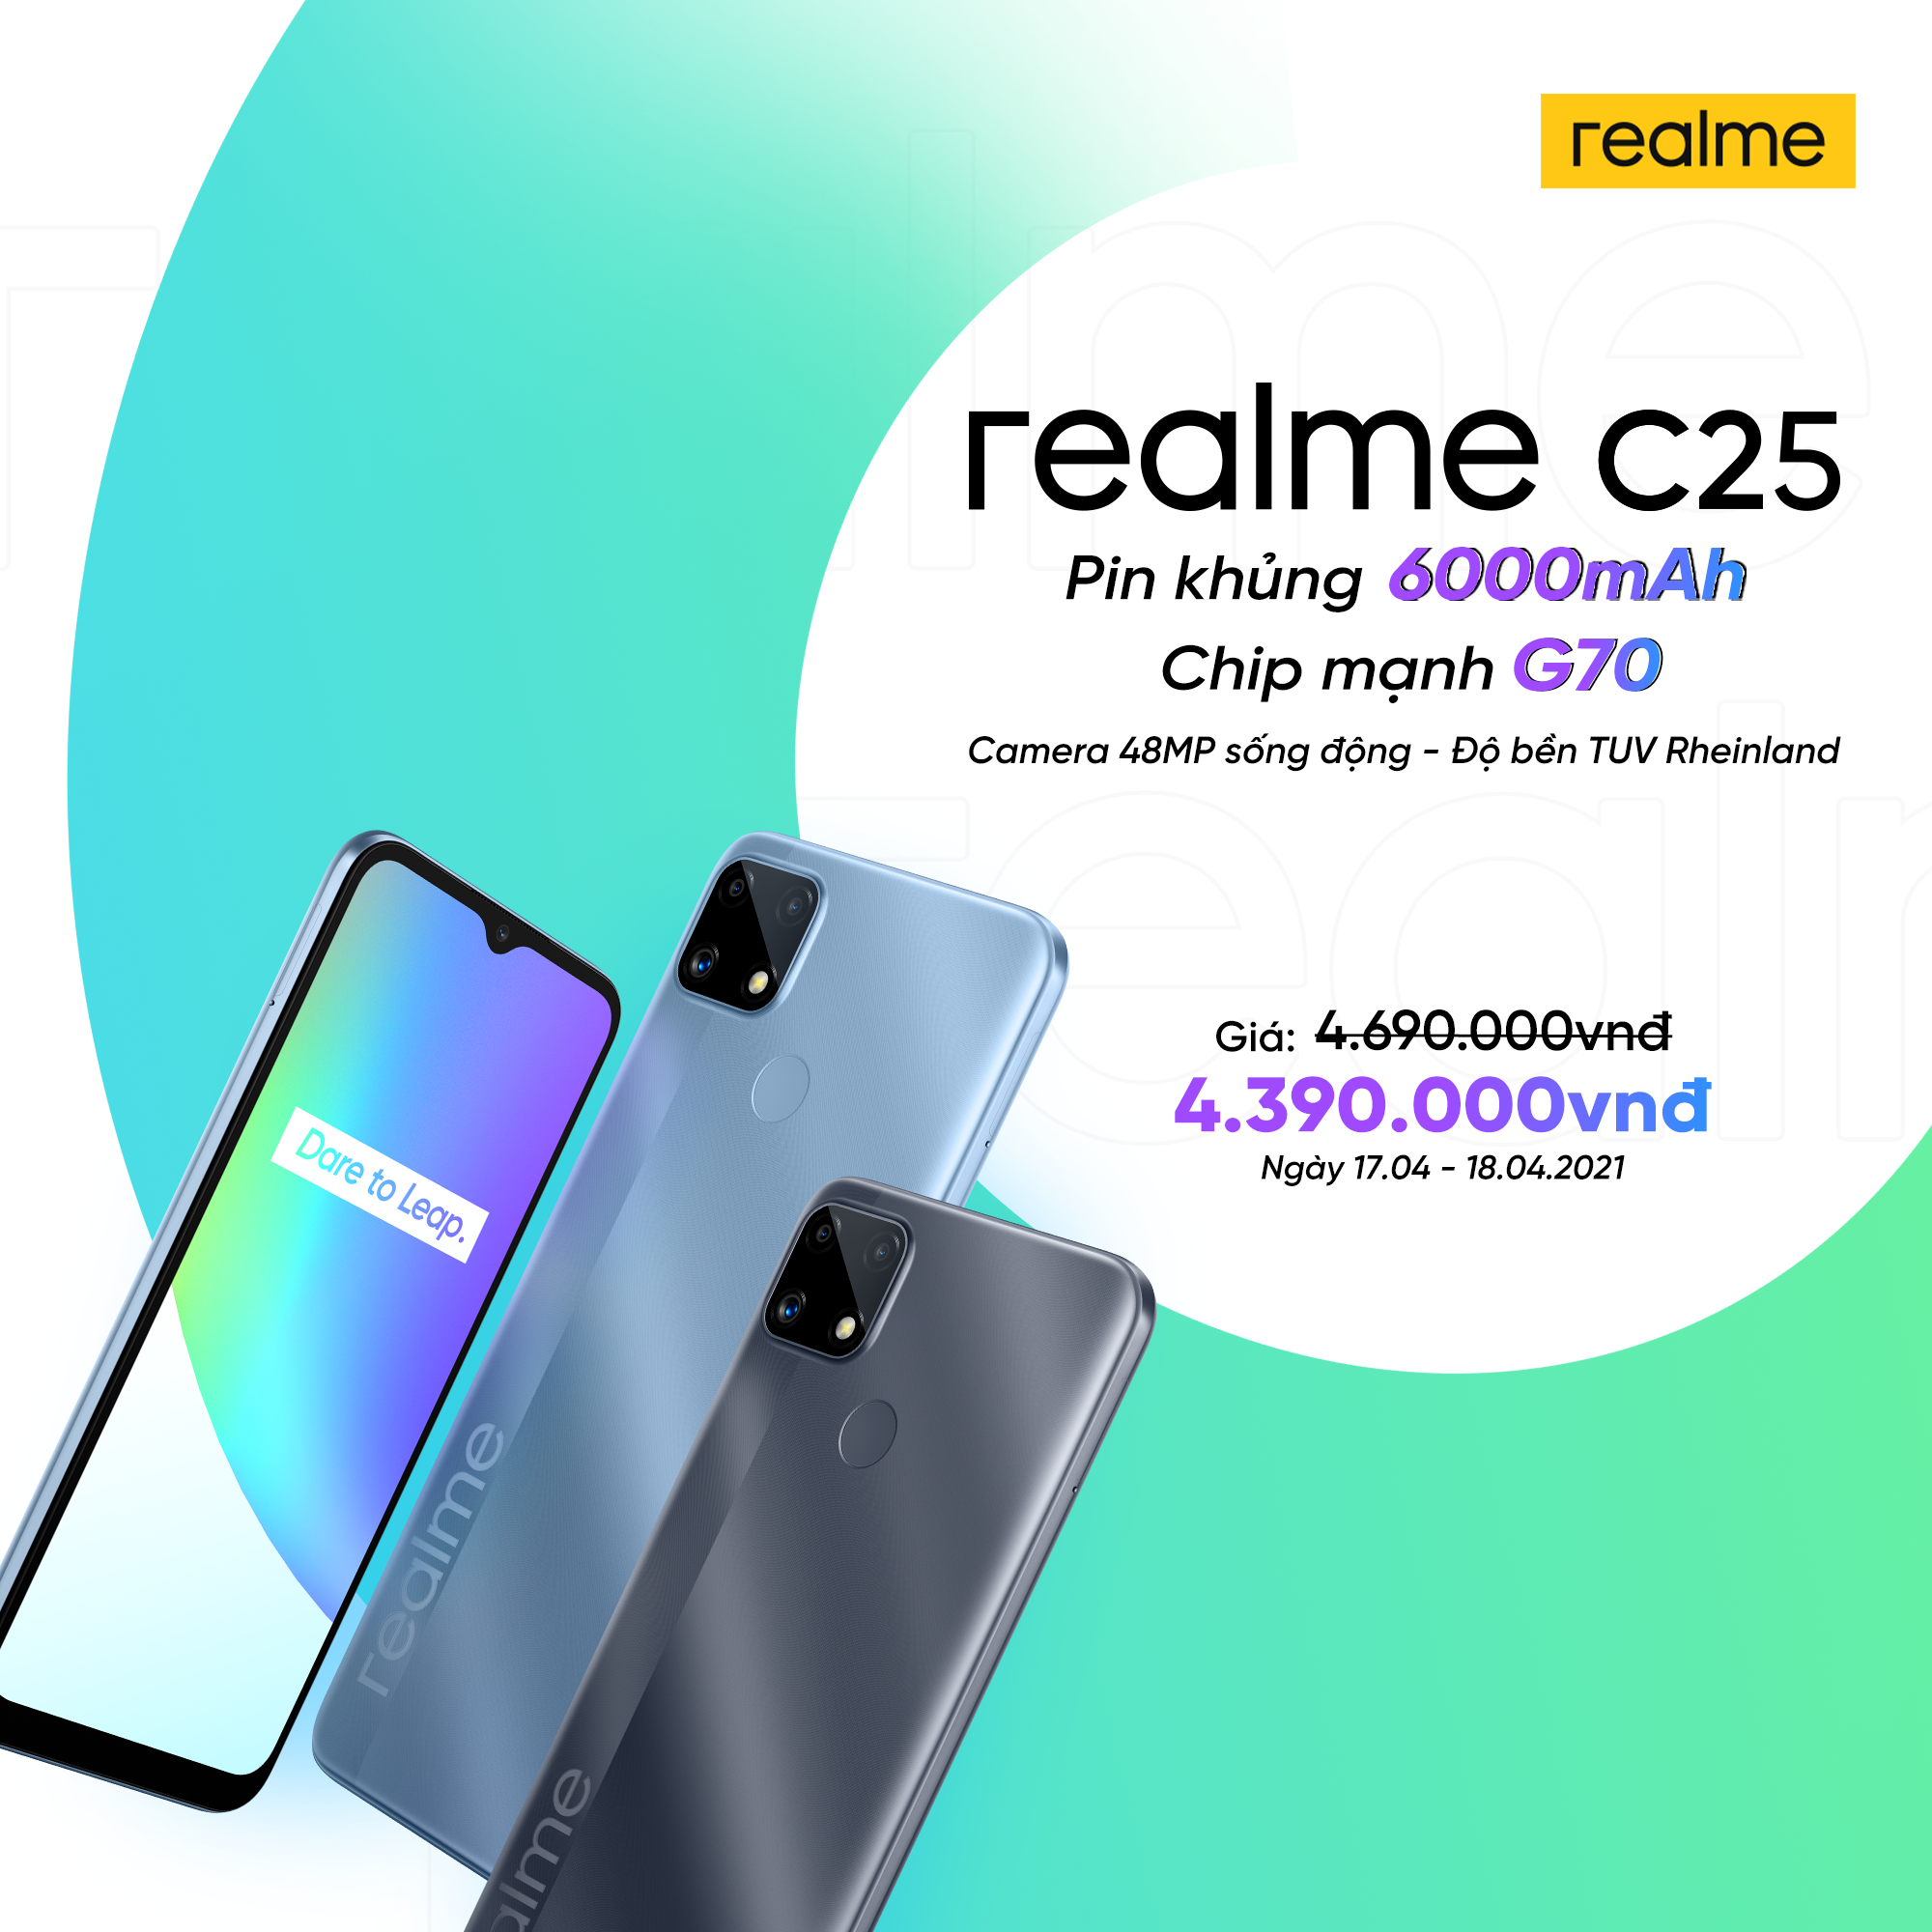 Realme C25 ra mắt tại VN: Thiết kế trẻ trung, cụm 3 camera 48MP, pin khủng 6000mAh, giá từ 4.69 triệu đồng - Ảnh 6.